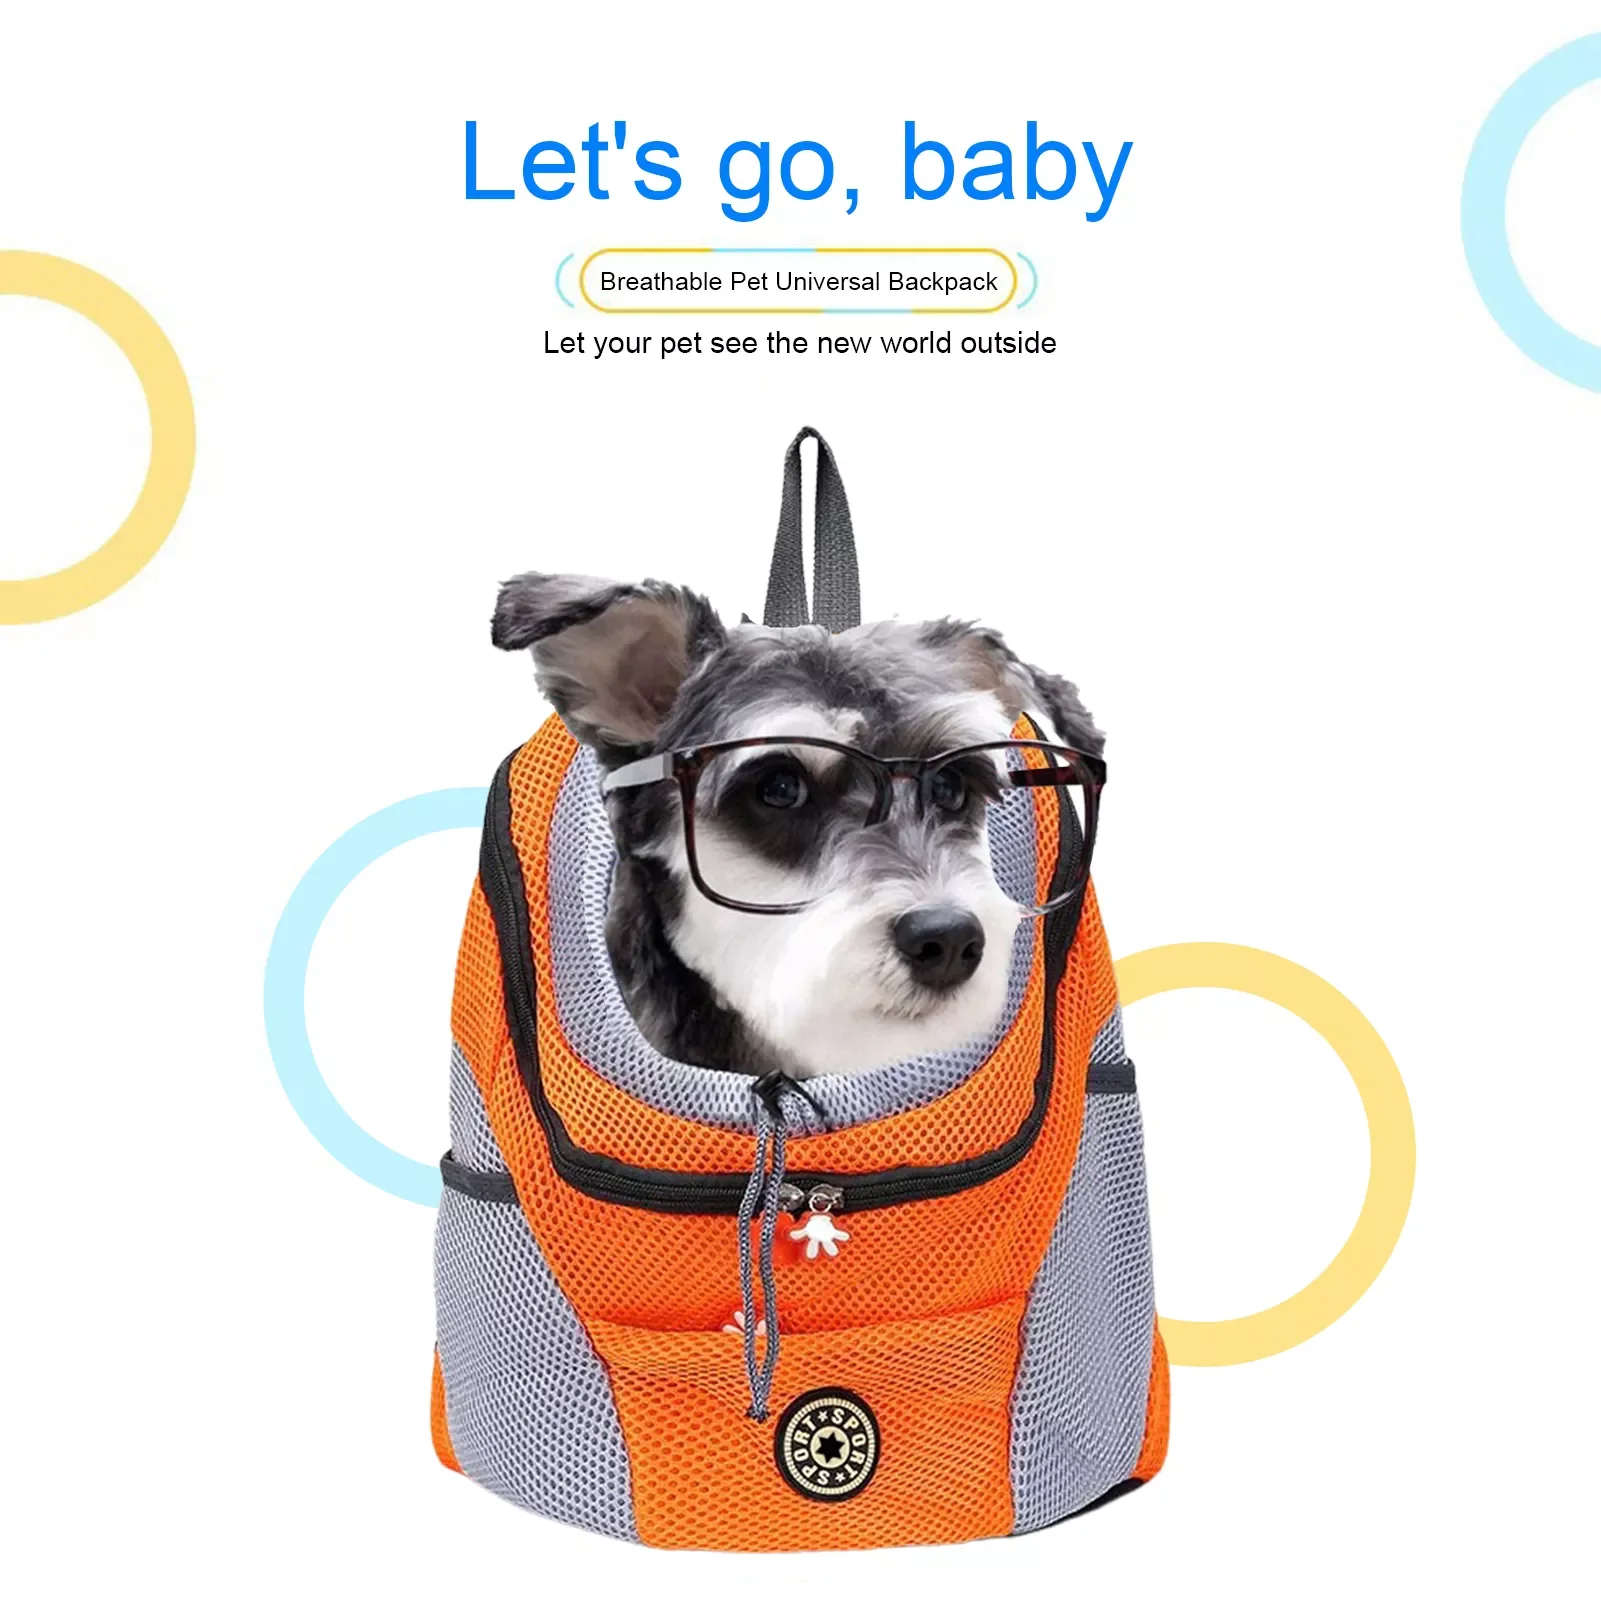 

Портативный рюкзак 2022JMT для домашних животных, дорожная сумка на плечо для маленьких собак и кошек, с дышащей сеткой и дизайном на голову